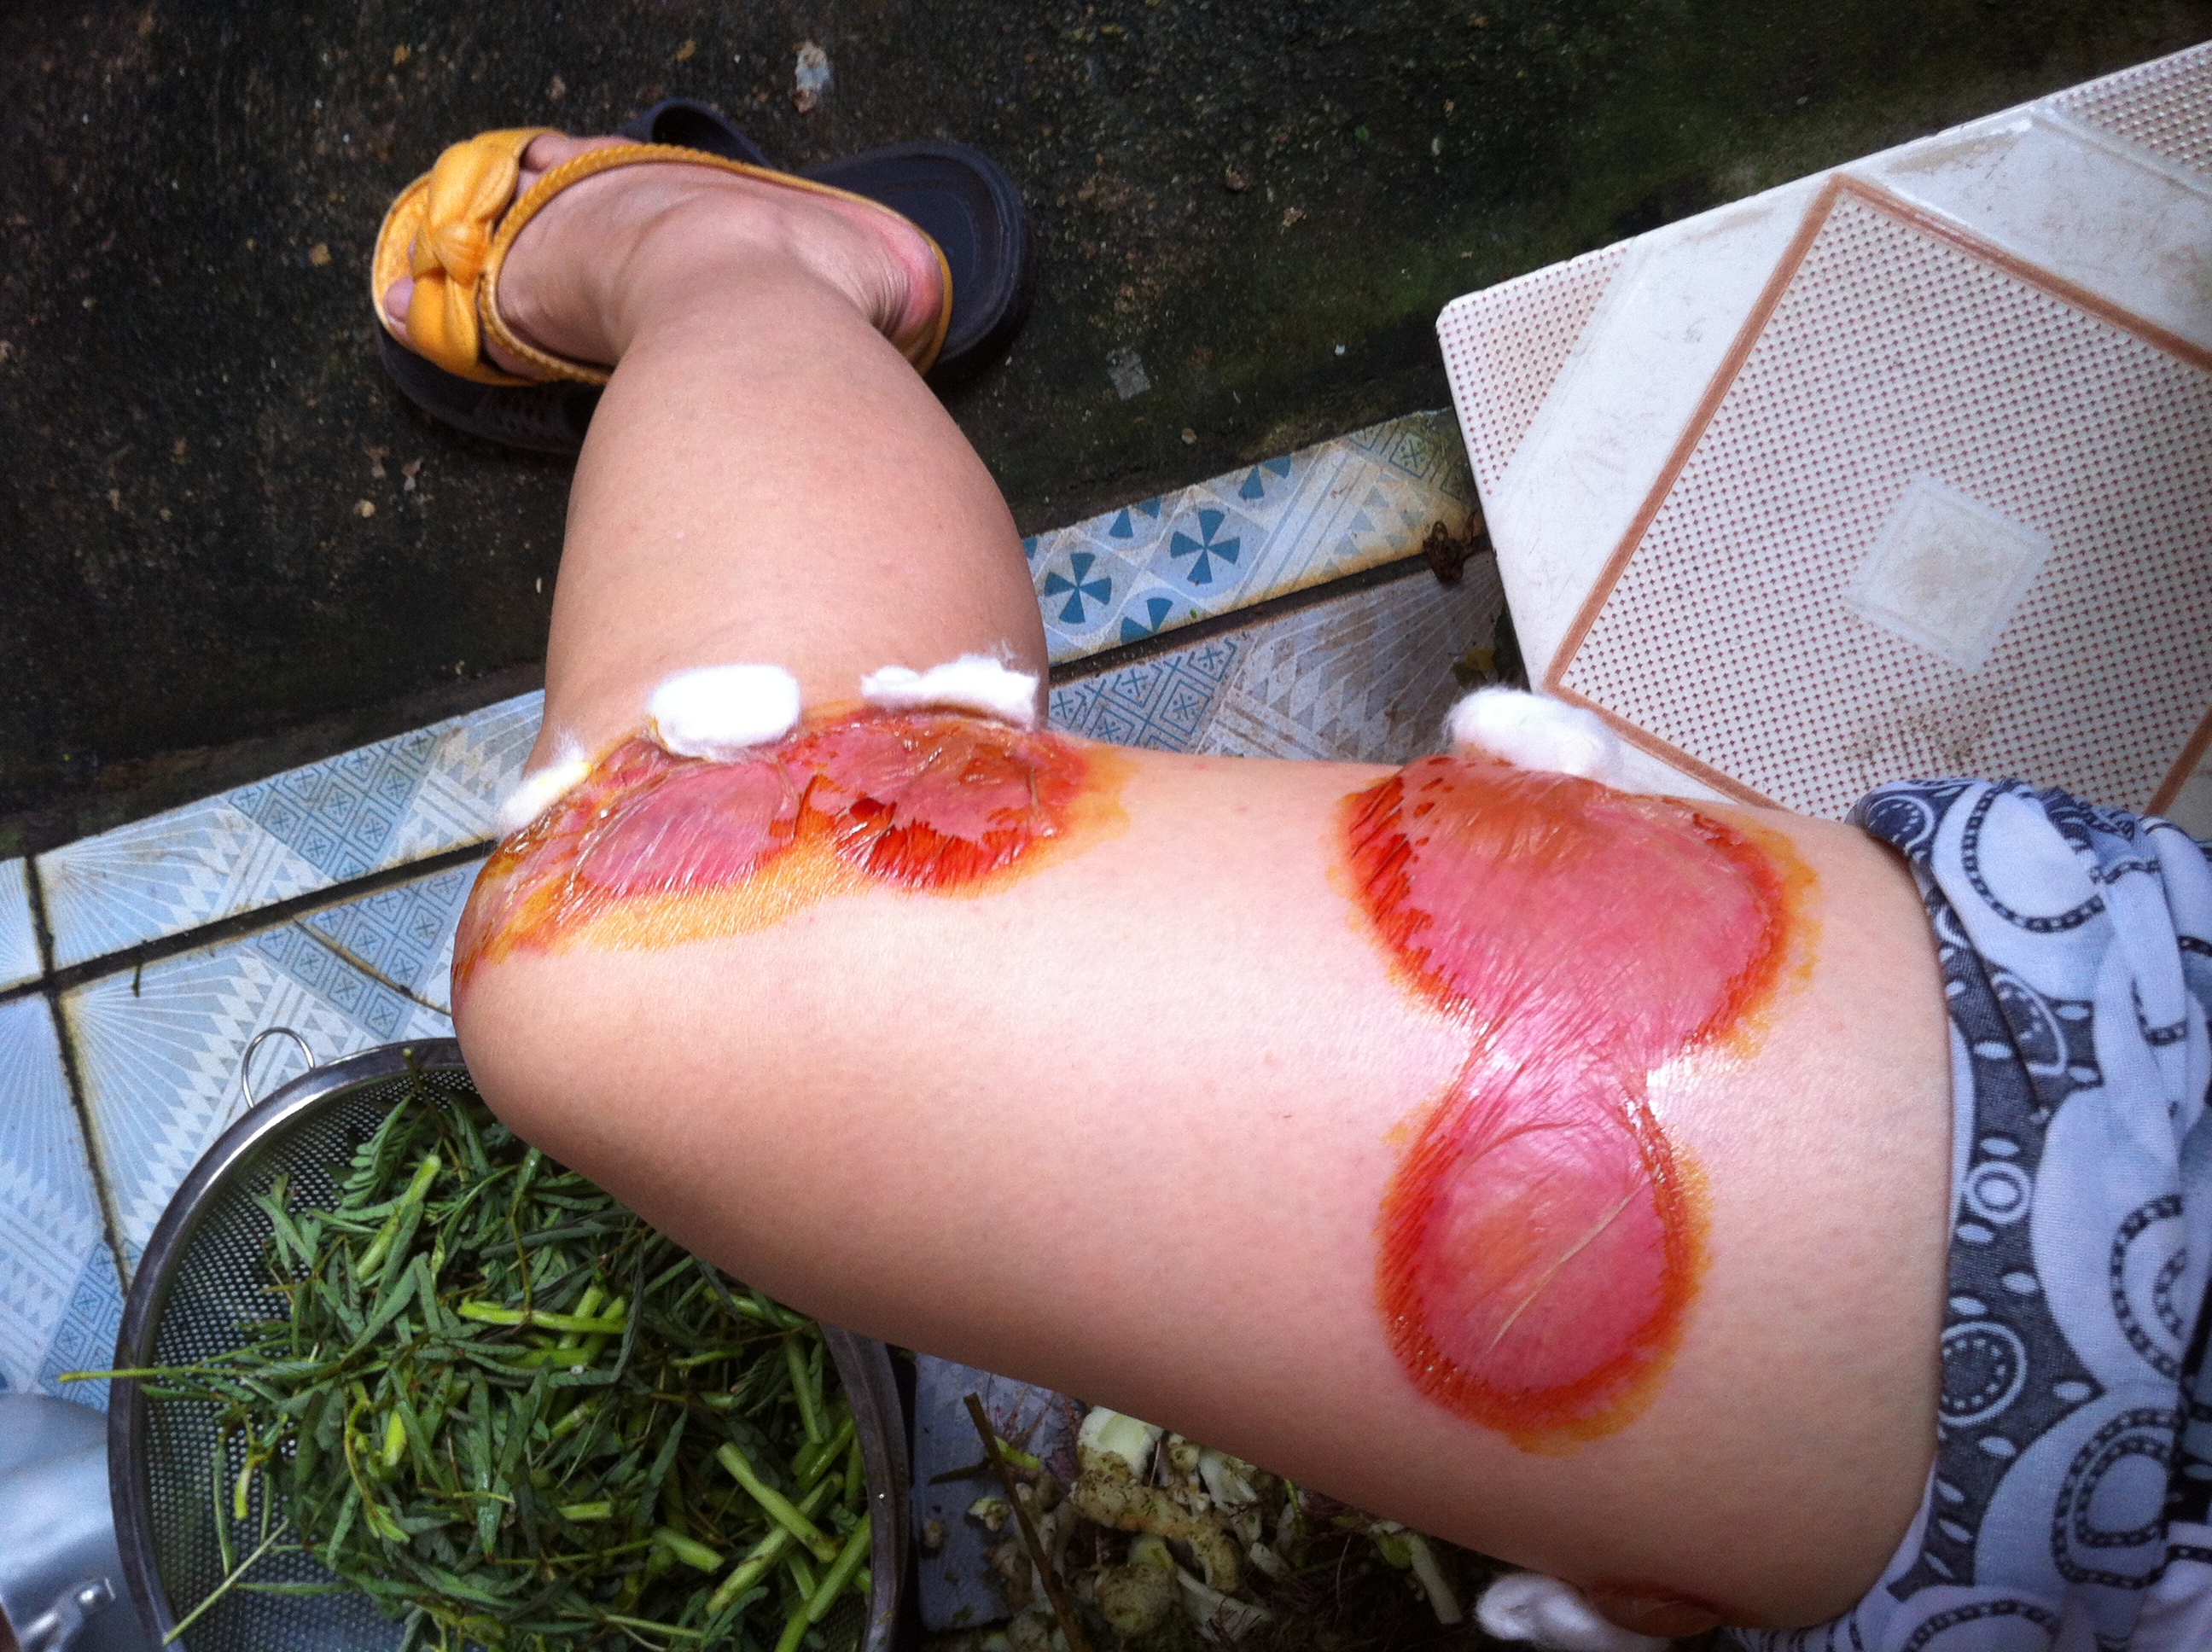 Sức khoẻ - Làm đẹp - Xuất hiện bọ xít hút máu người tại Hà Nội (Hình 2).